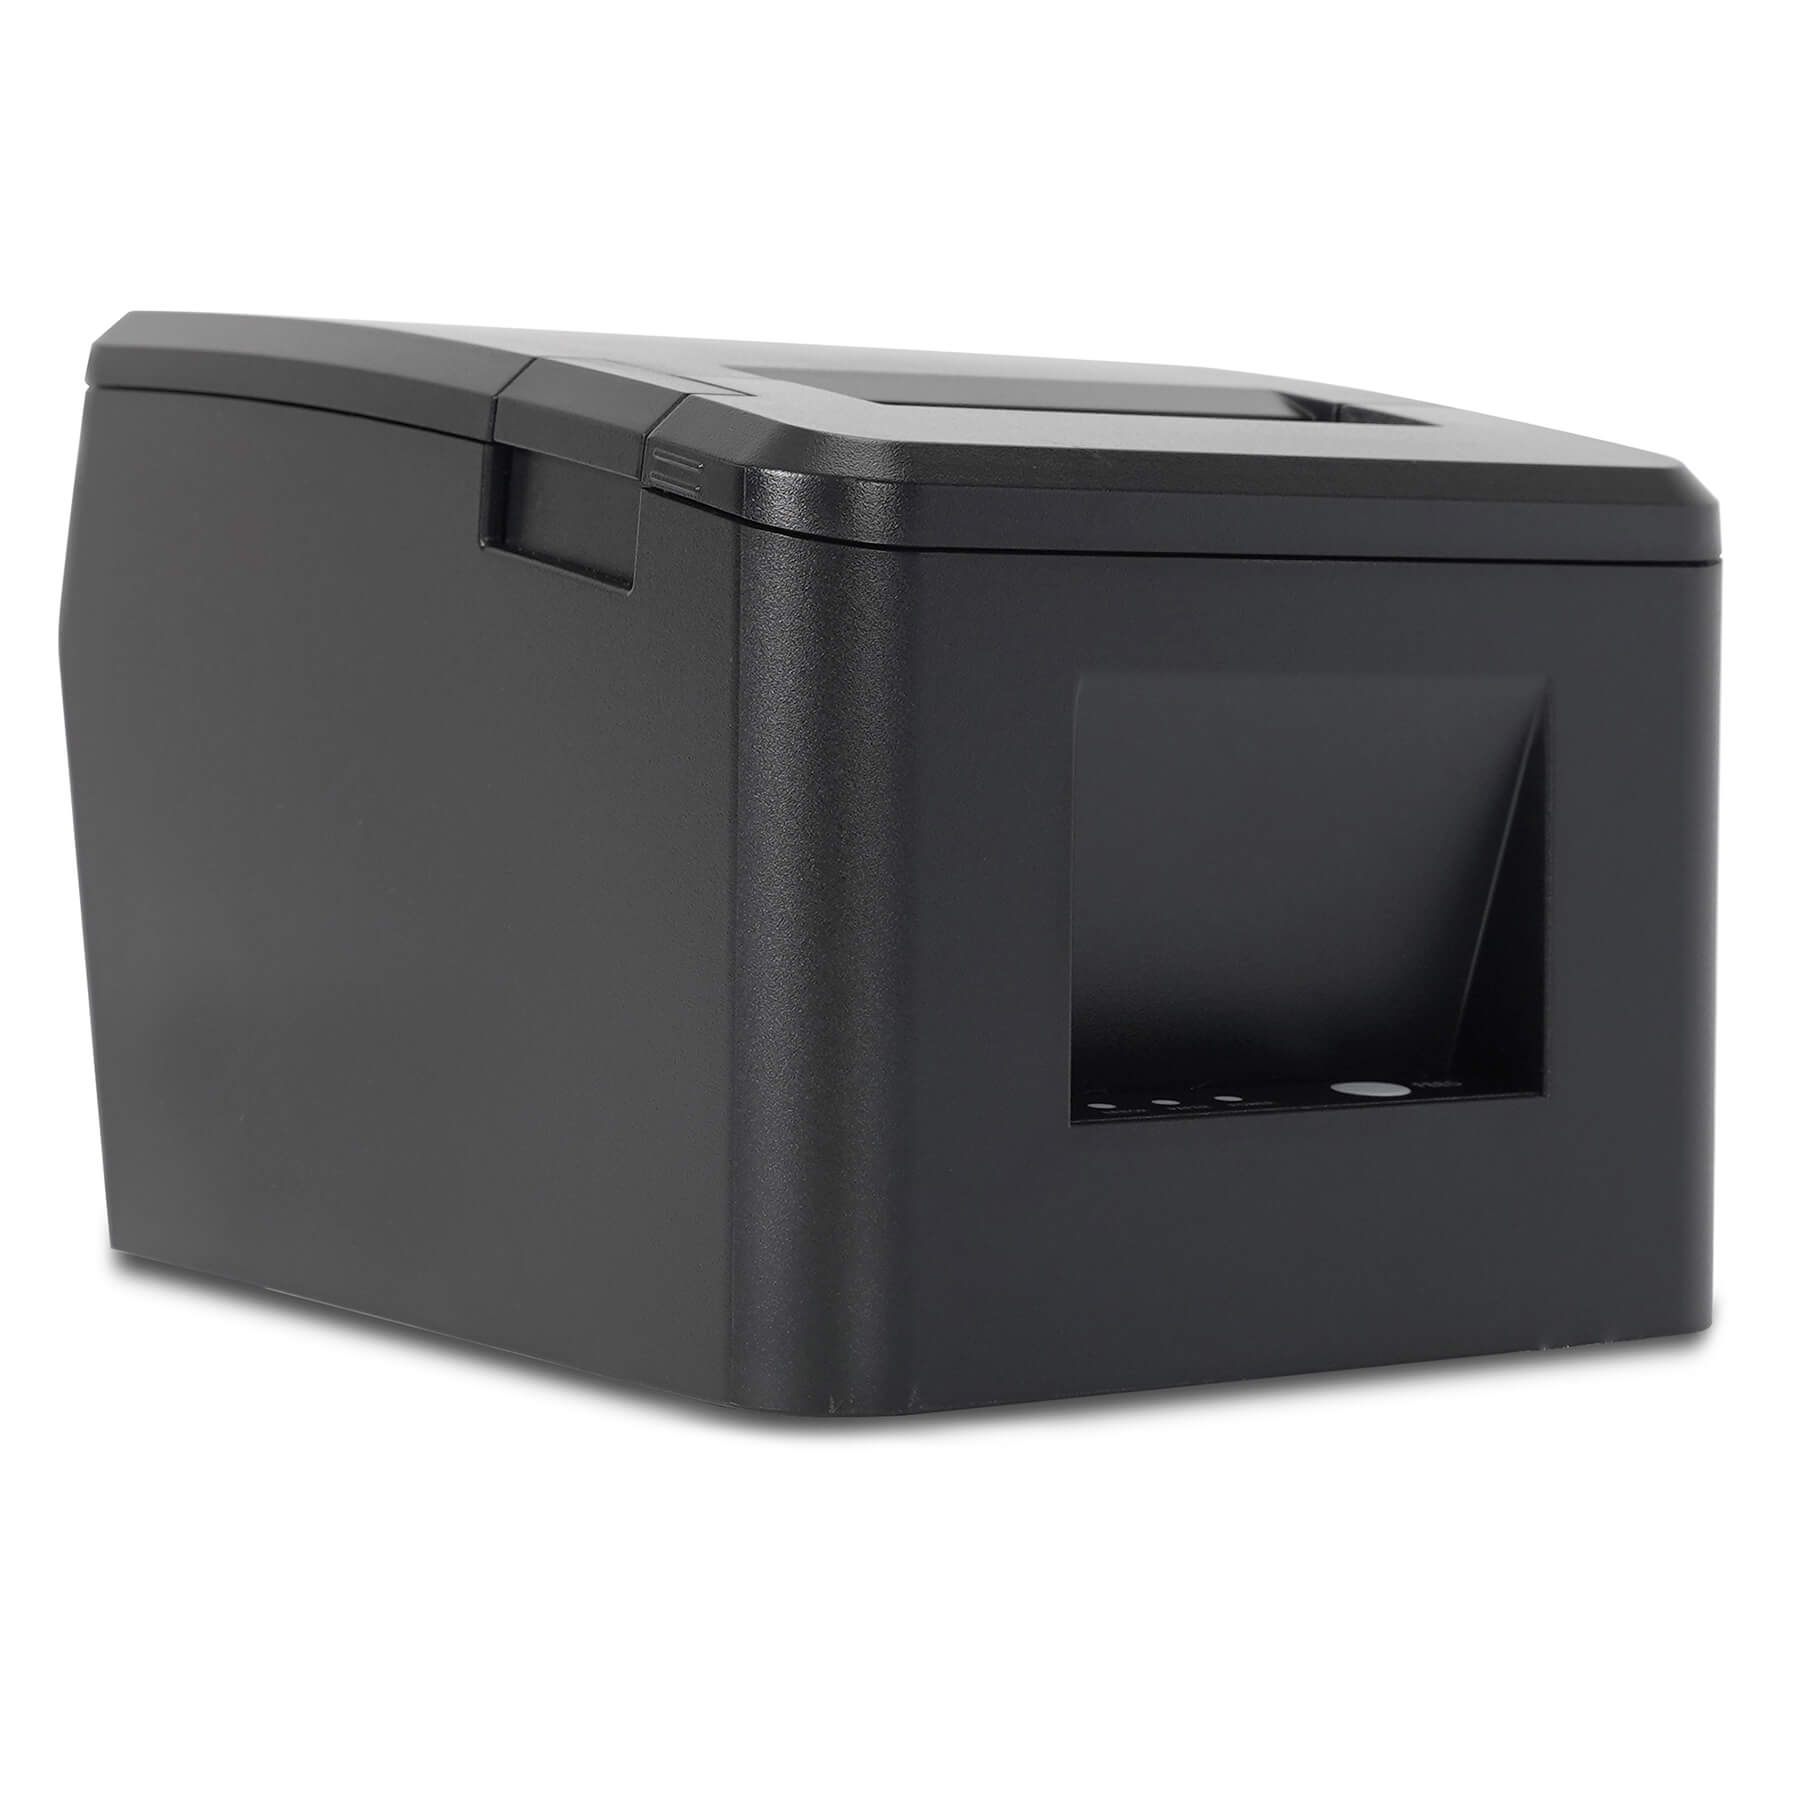 Чековый принтер MERTECH F80 RS232, USB, Ethernet Black